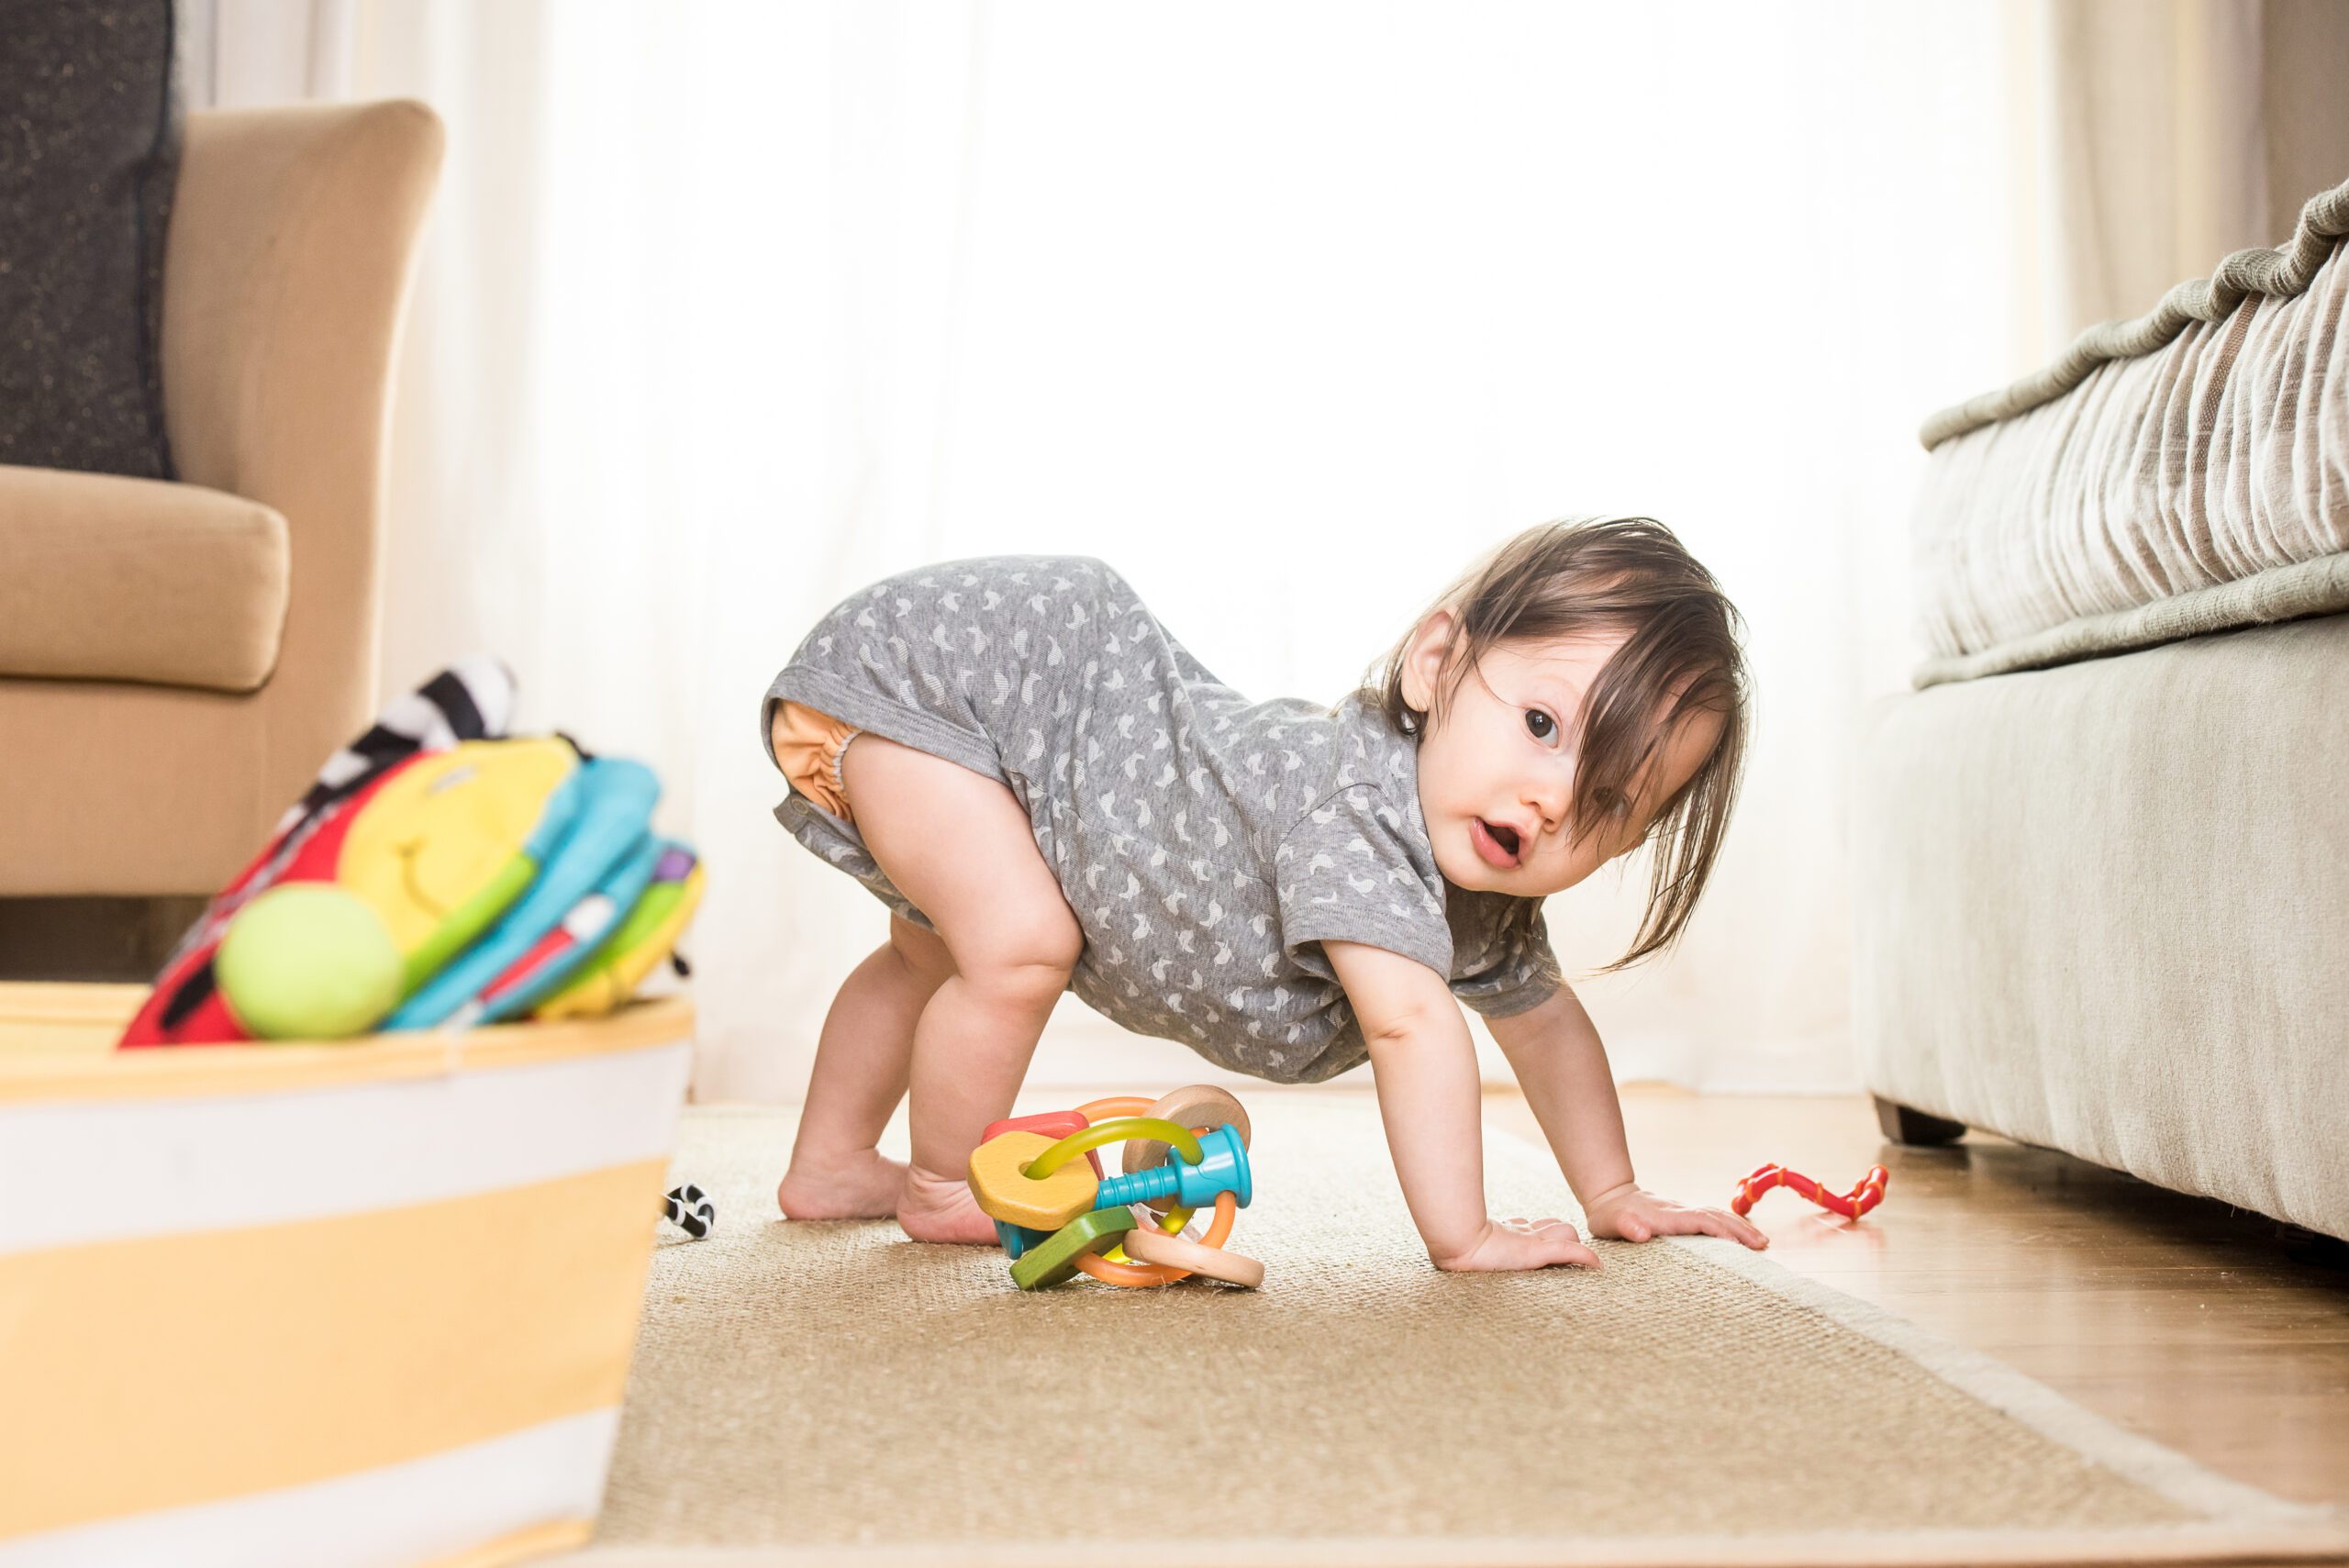 المهارات الحركية الدقيقة للاطفال بين العام الاول والثلاثة اعوام